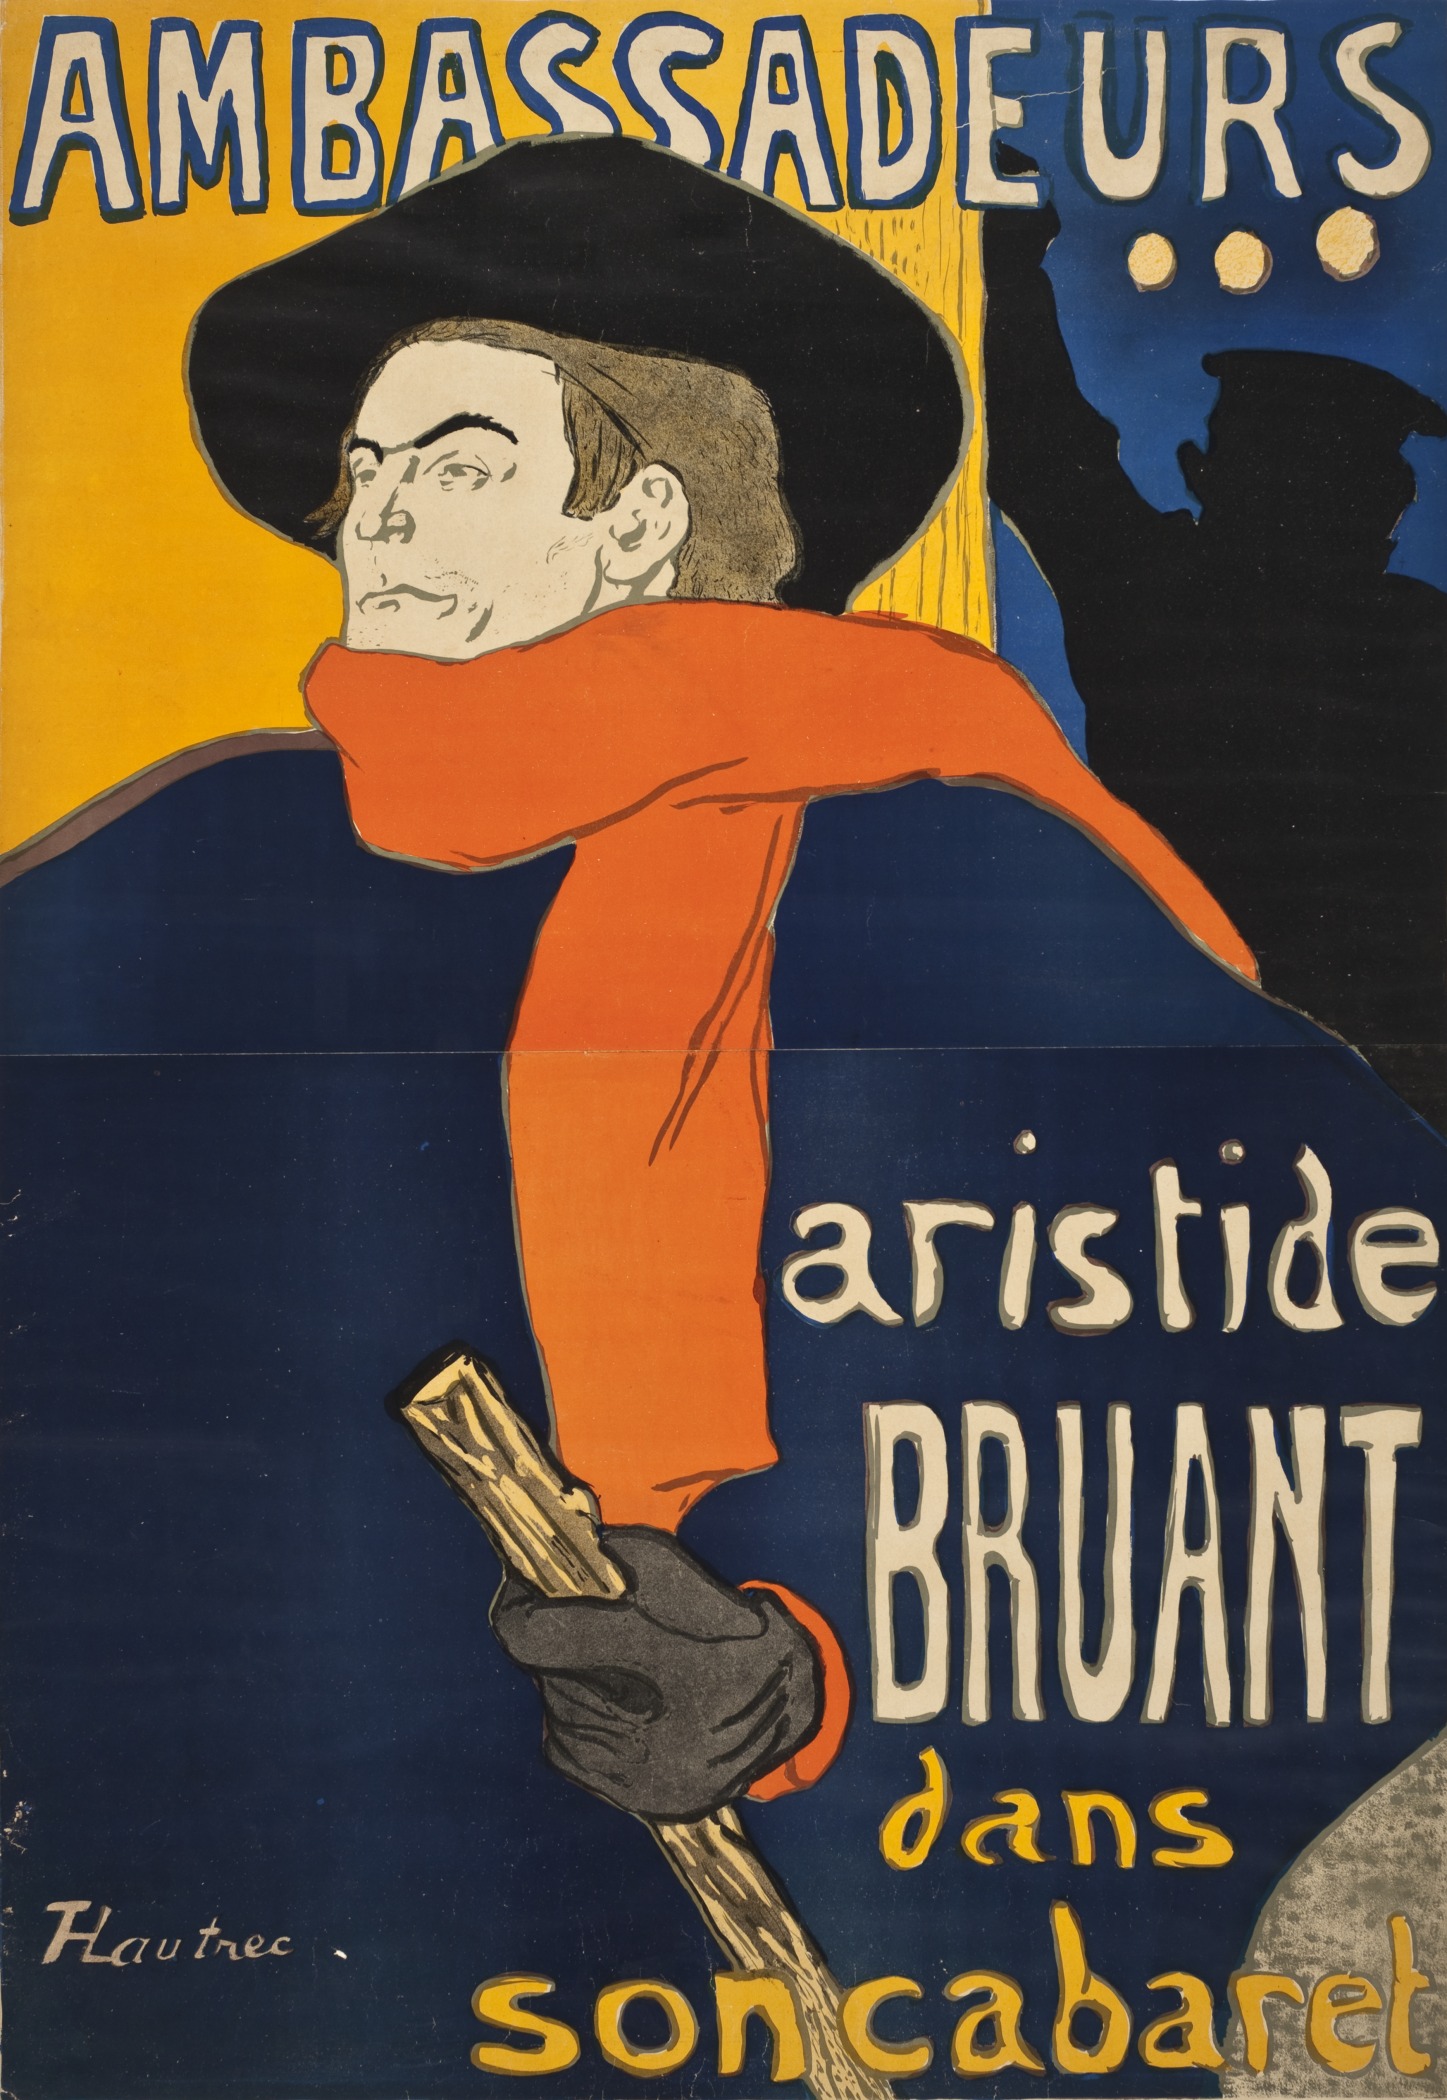 Ambassadeurs, Aristide Bruant by Henri de Toulouse-Lautrec - 1892 - 150 × 100 cm Private Sammlung